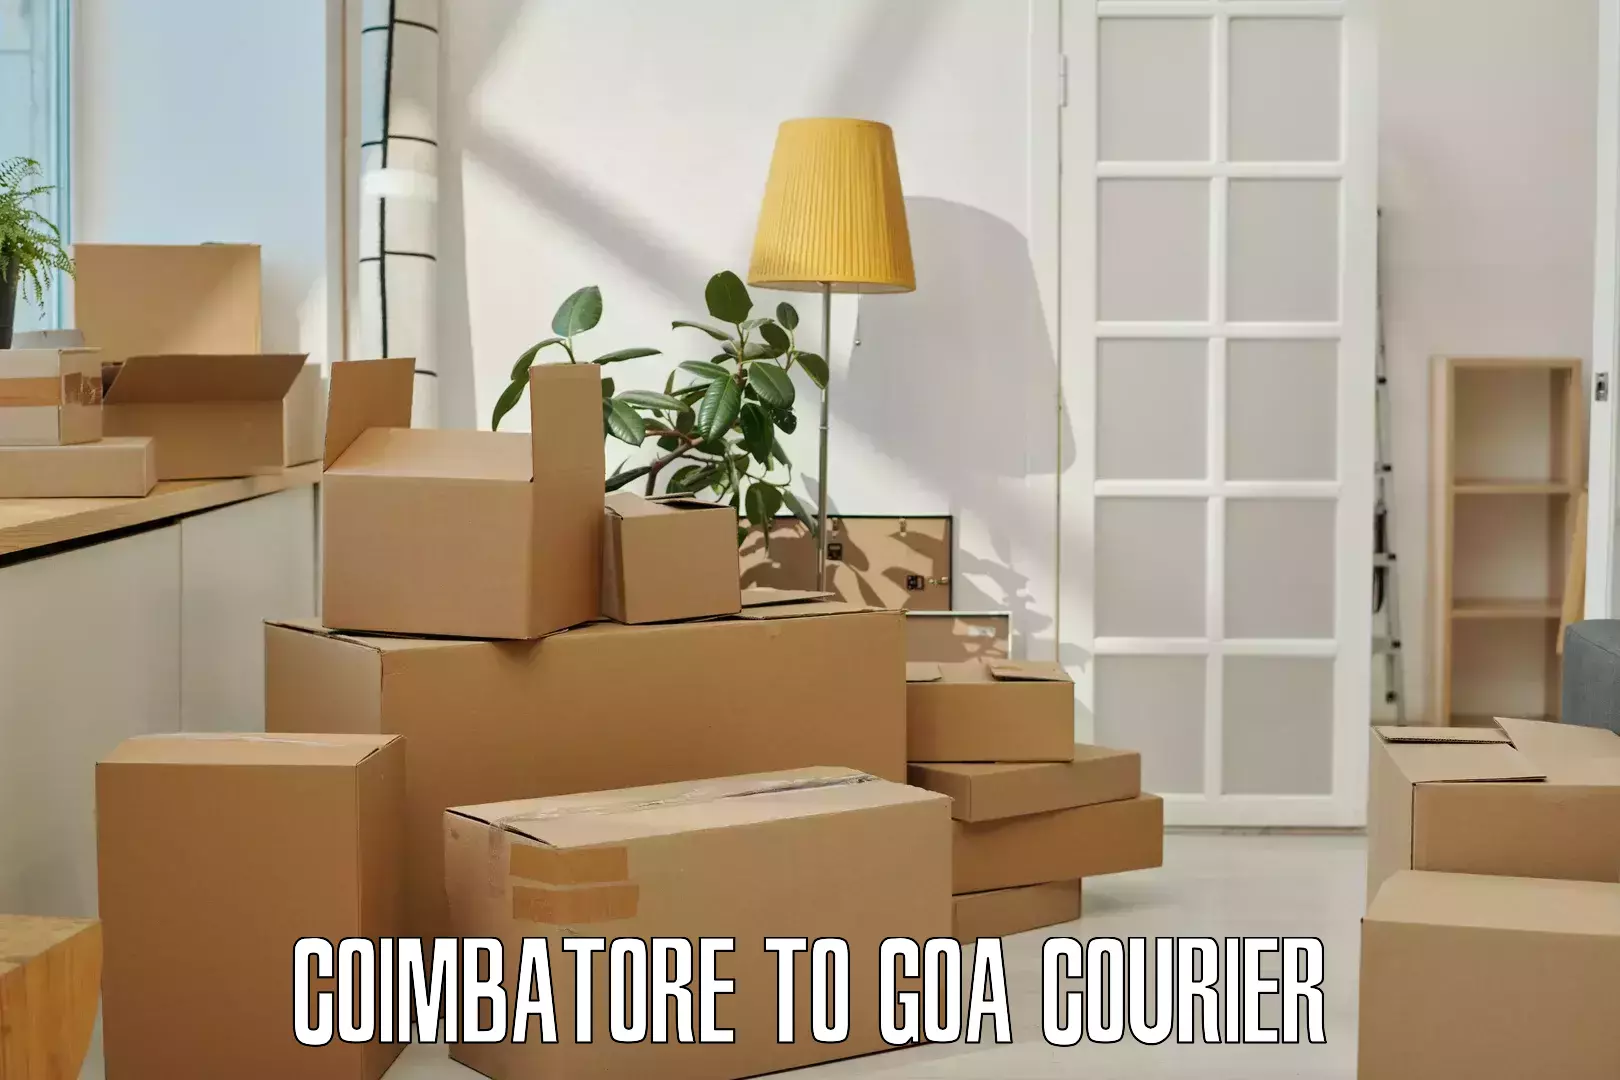 Courier service comparison in Coimbatore to Bicholim